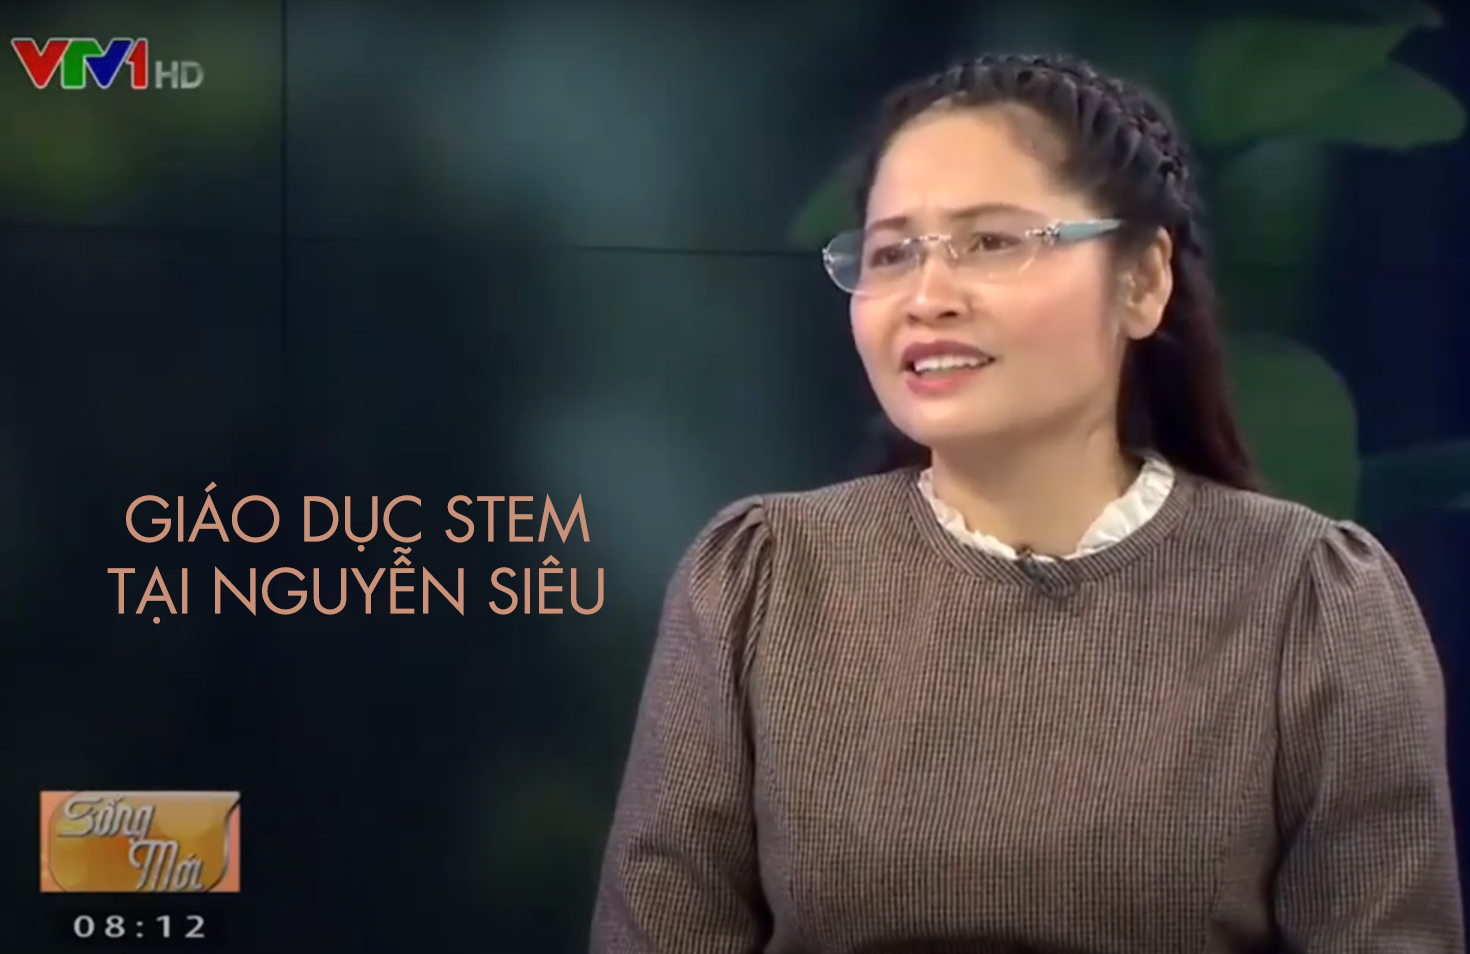 Hiệu trưởng Nguyễn Siêu nói về giáo dục STEM trên VTV1